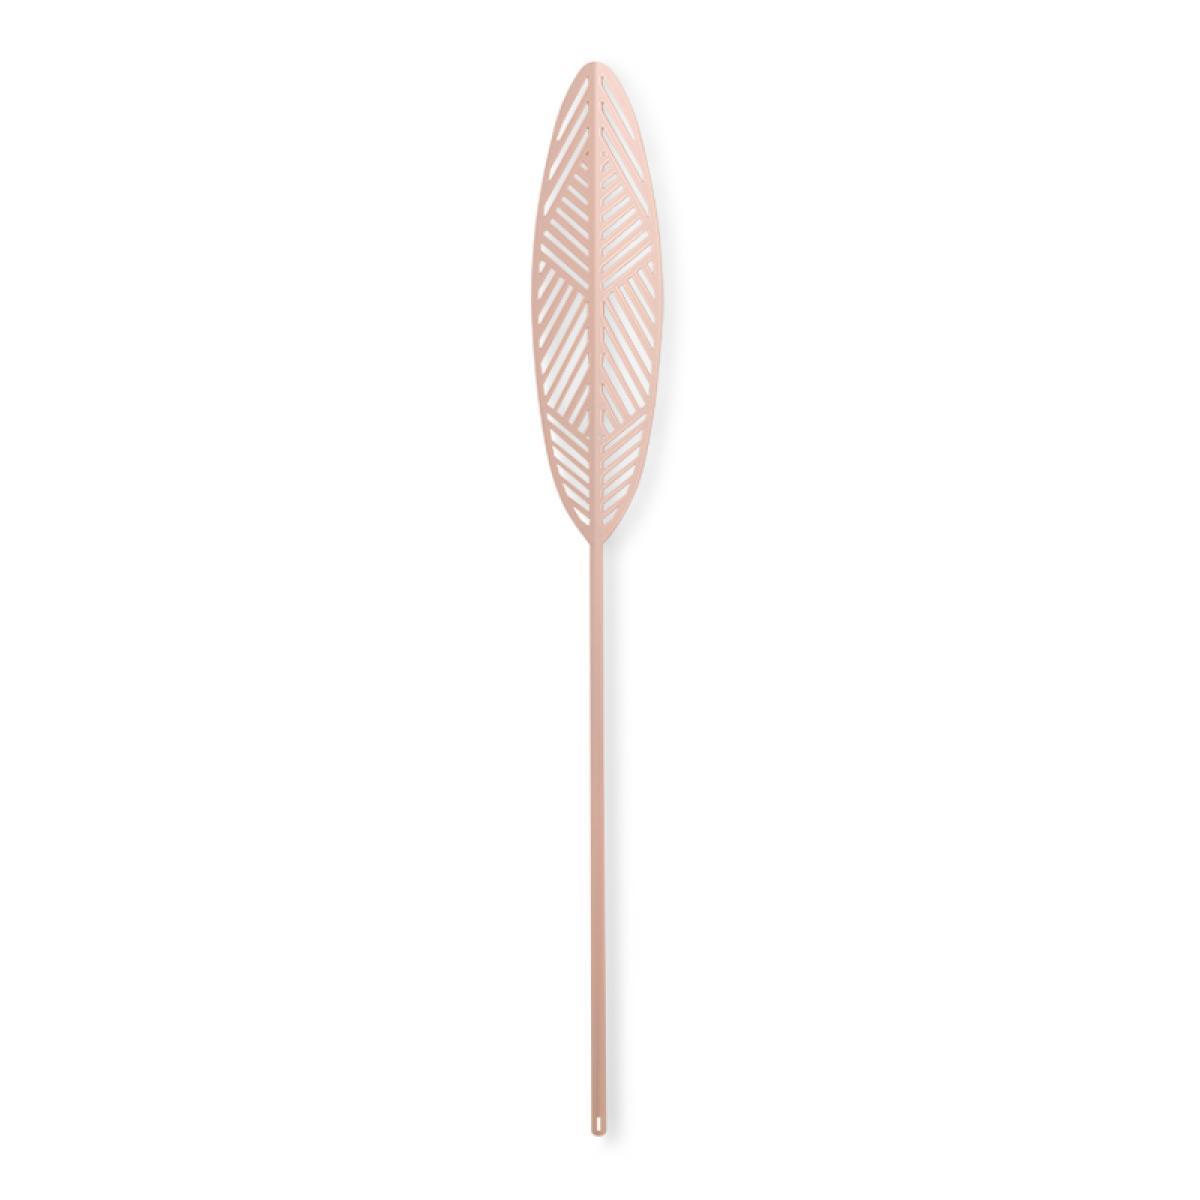 Lucie Kaas Leaflike metalen plaat Silva Pink, 41 cm